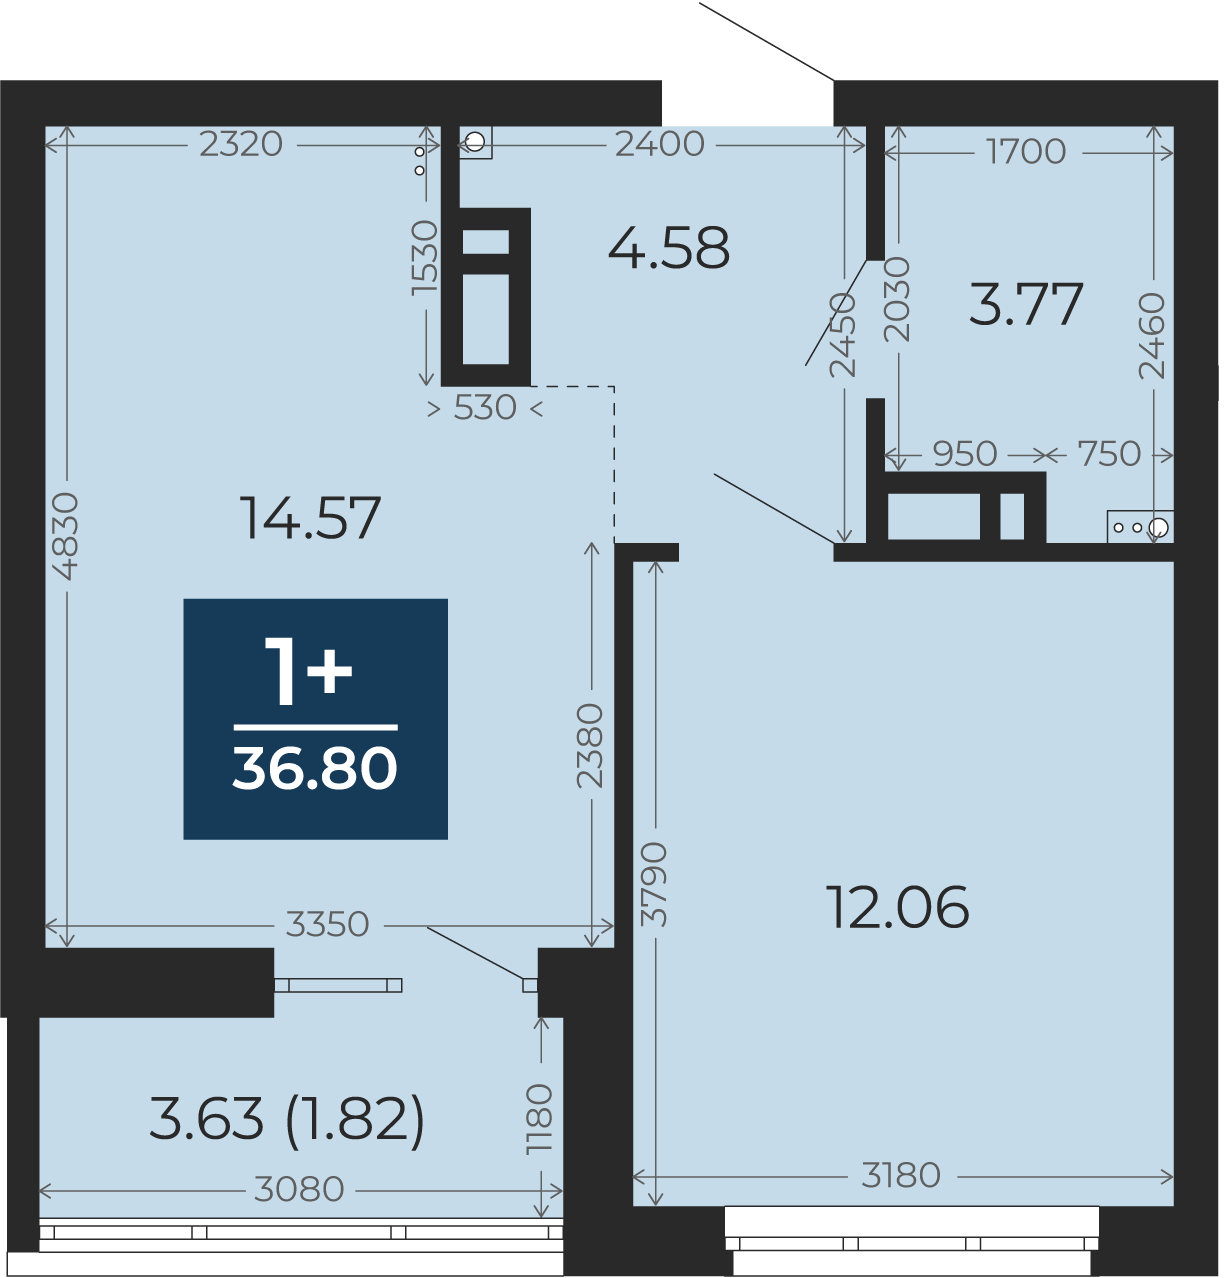 Квартира № 363, 1-комнатная, 36.8 кв. м, 4 этаж